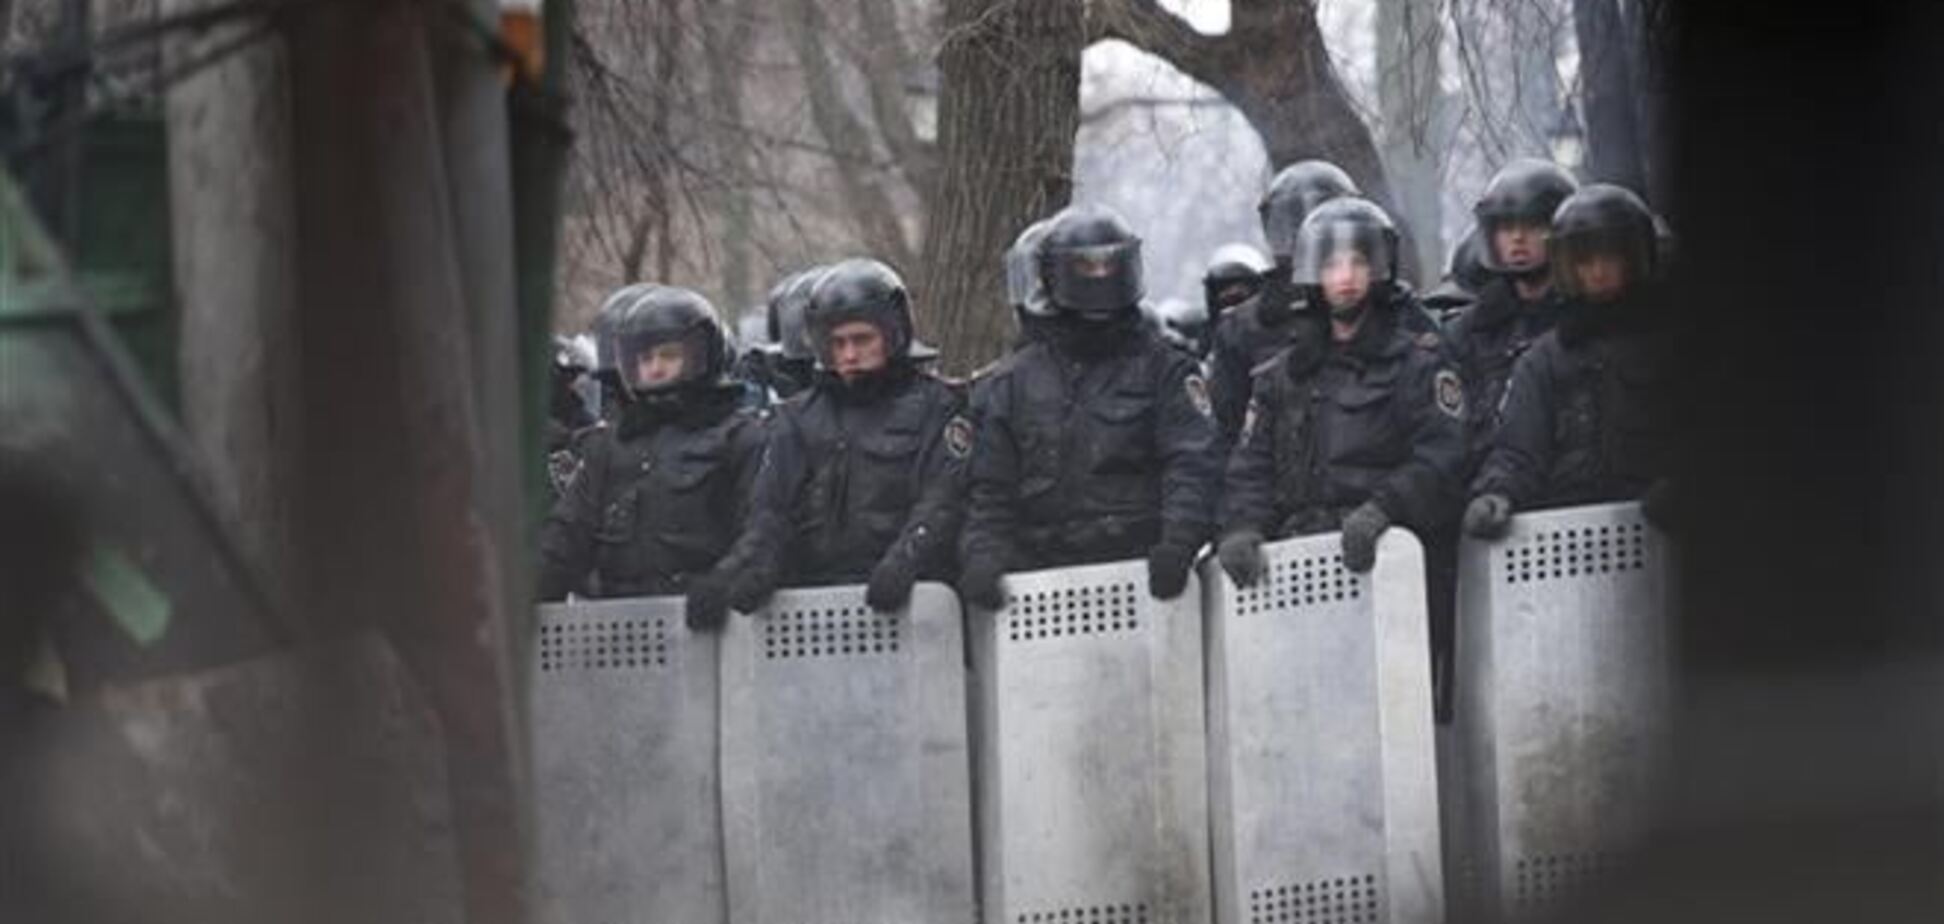 Активисты будут читать новости про Евромайдан силовикам